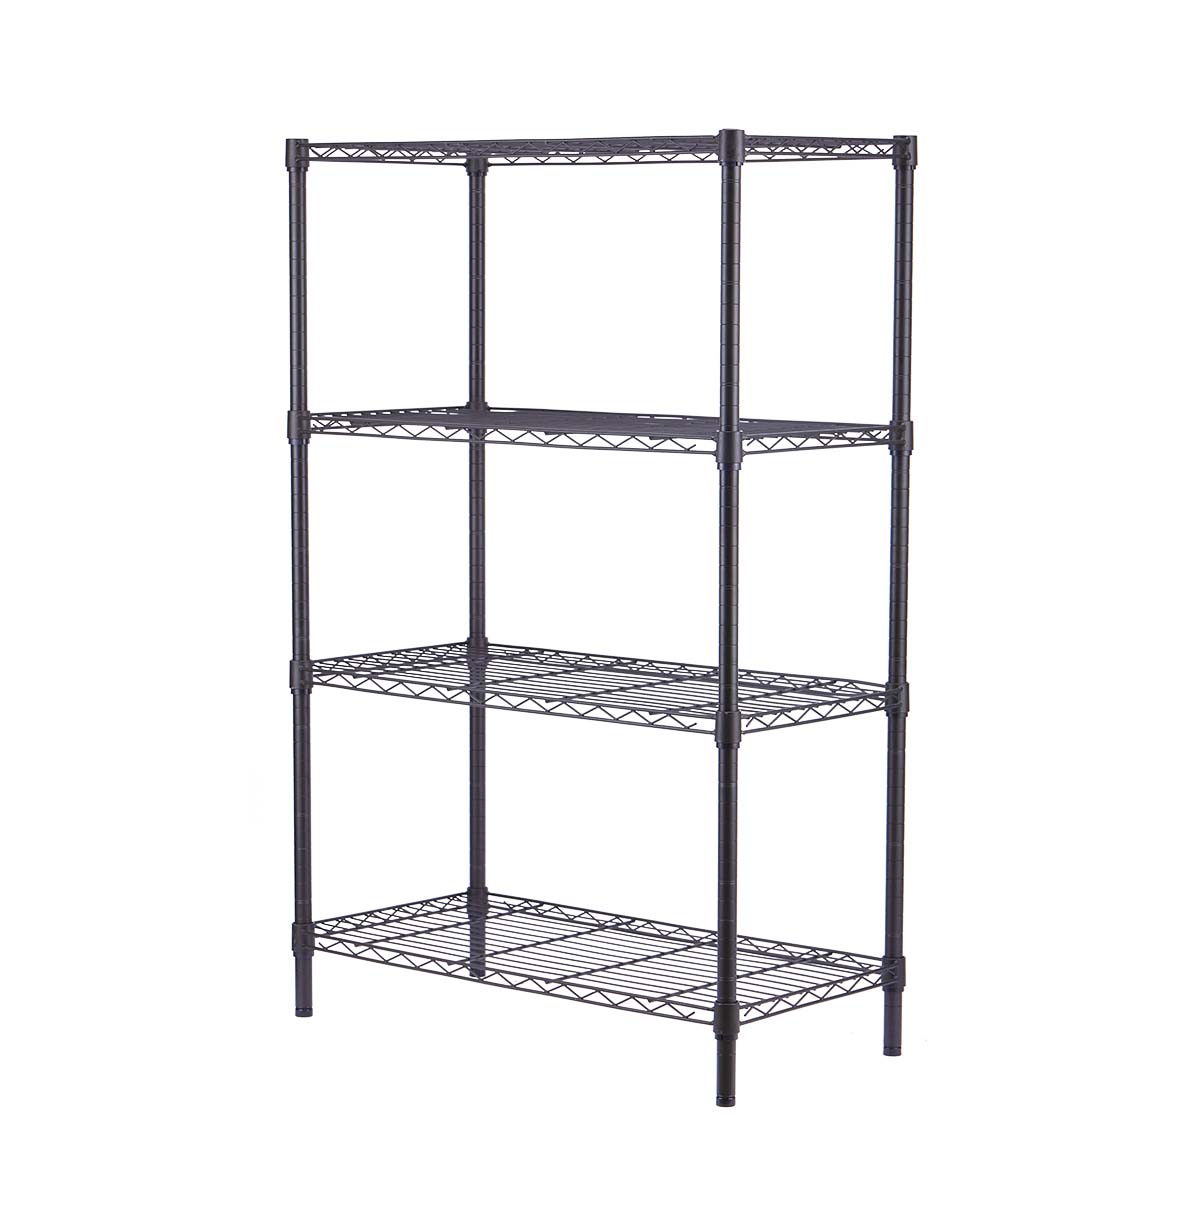 4-shelf wire storage rack